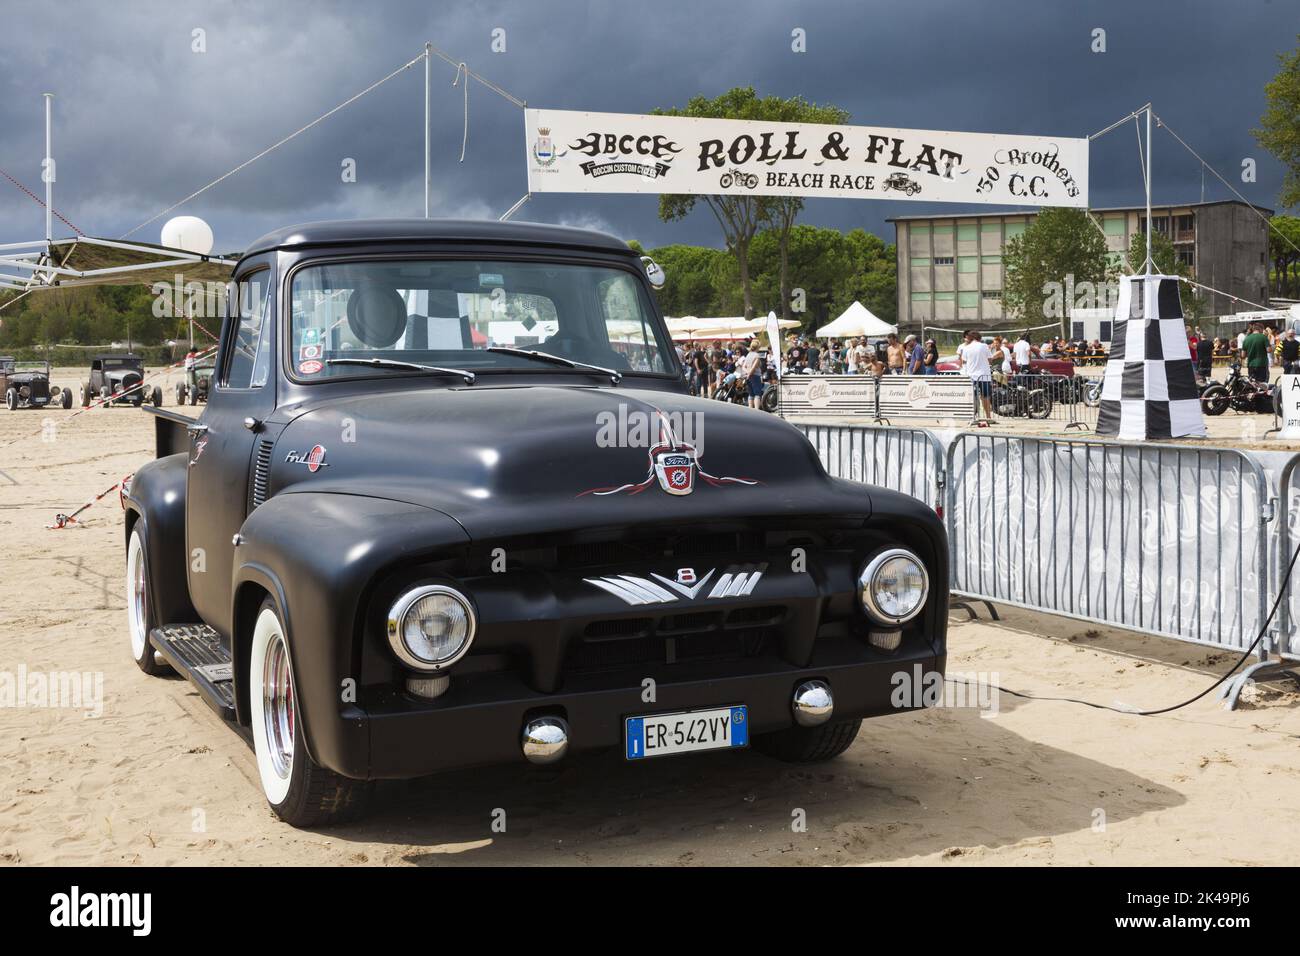 Hot Rod sulla spiaggia di Caorle, vicino a Venezia - auto rockabilly - Roll e Flat - Motor show - gara auto d'epoca Foto Stock